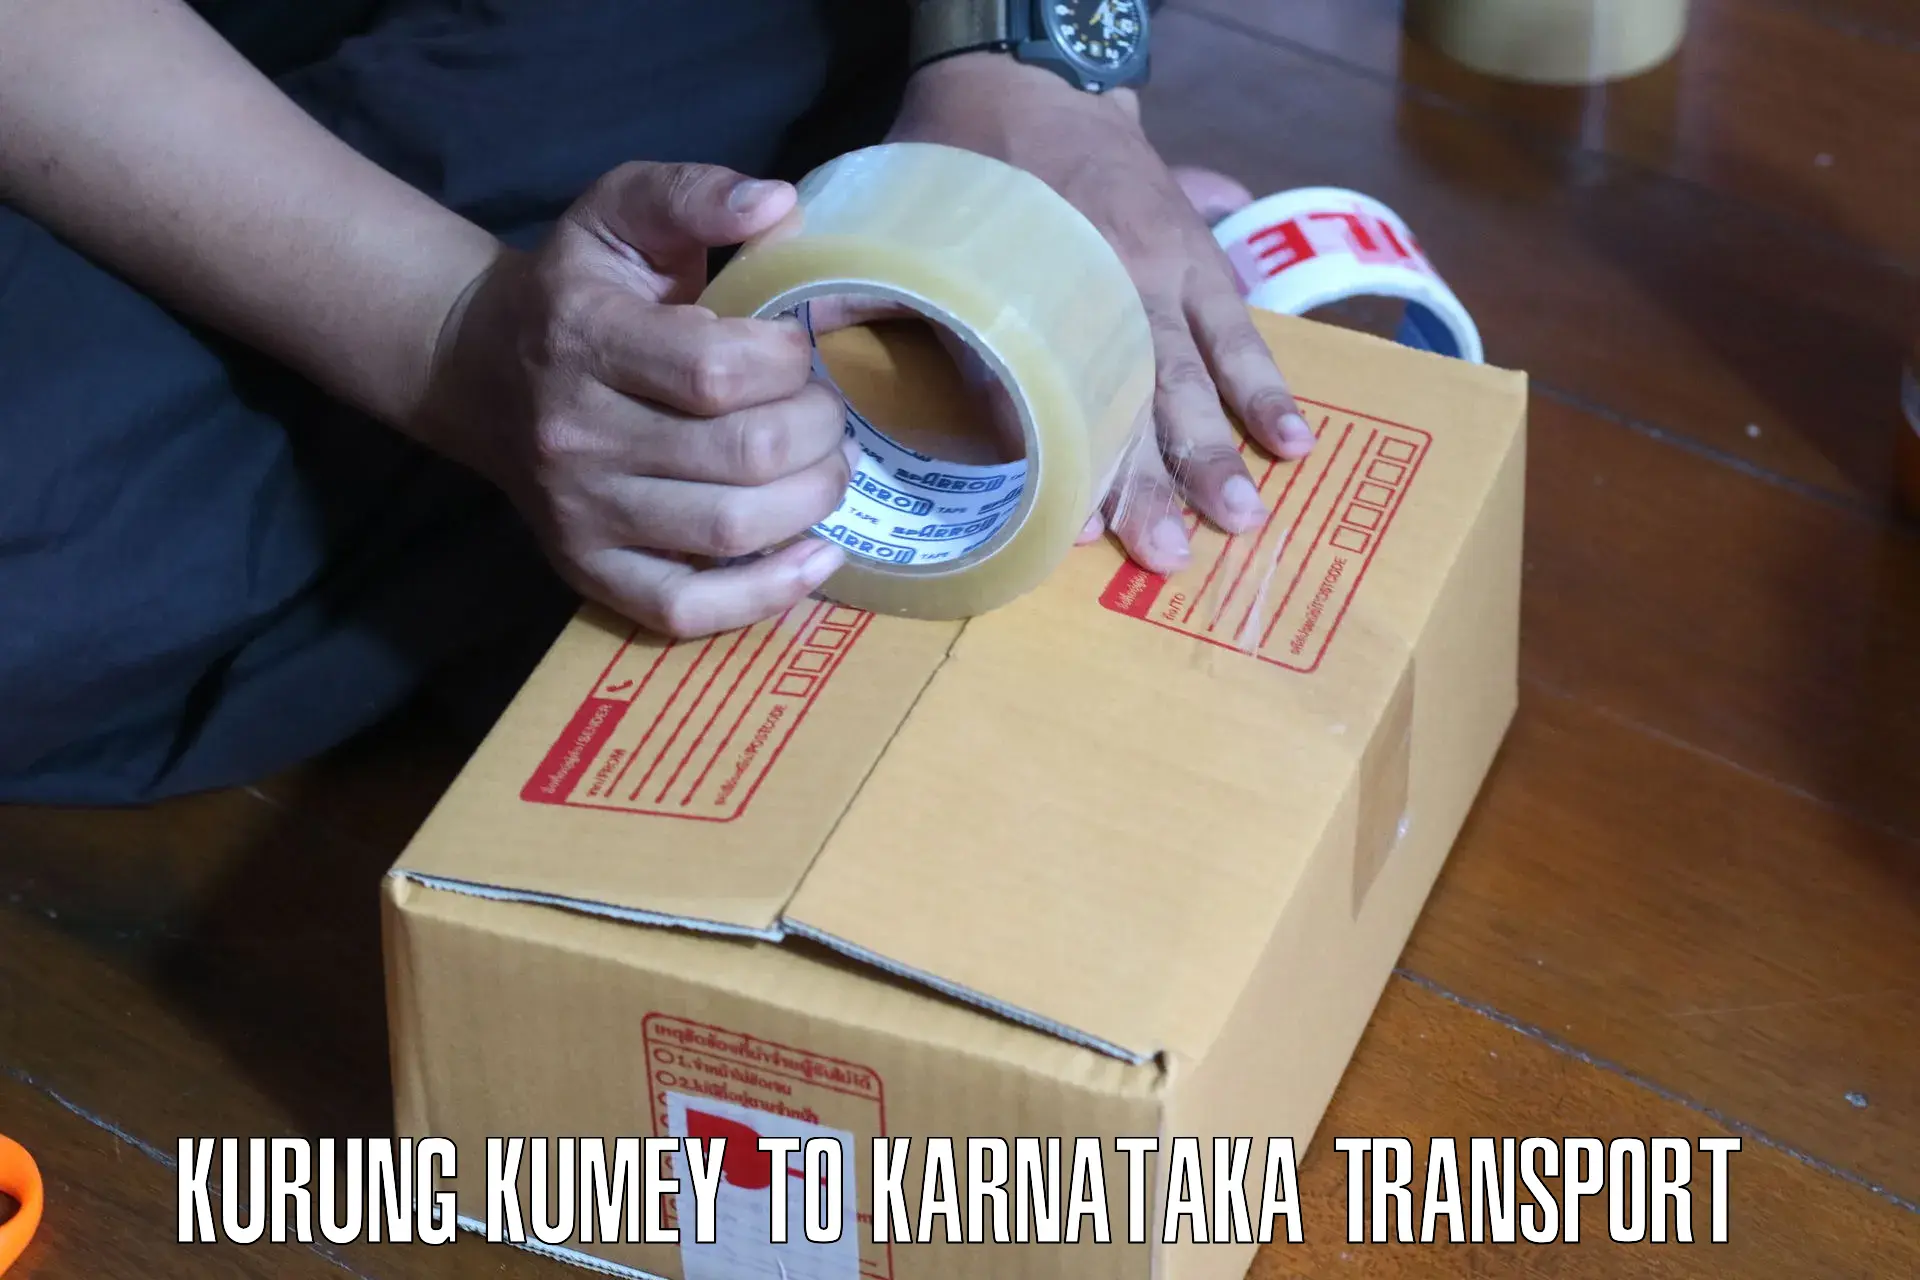 Shipping partner Kurung Kumey to Karnataka